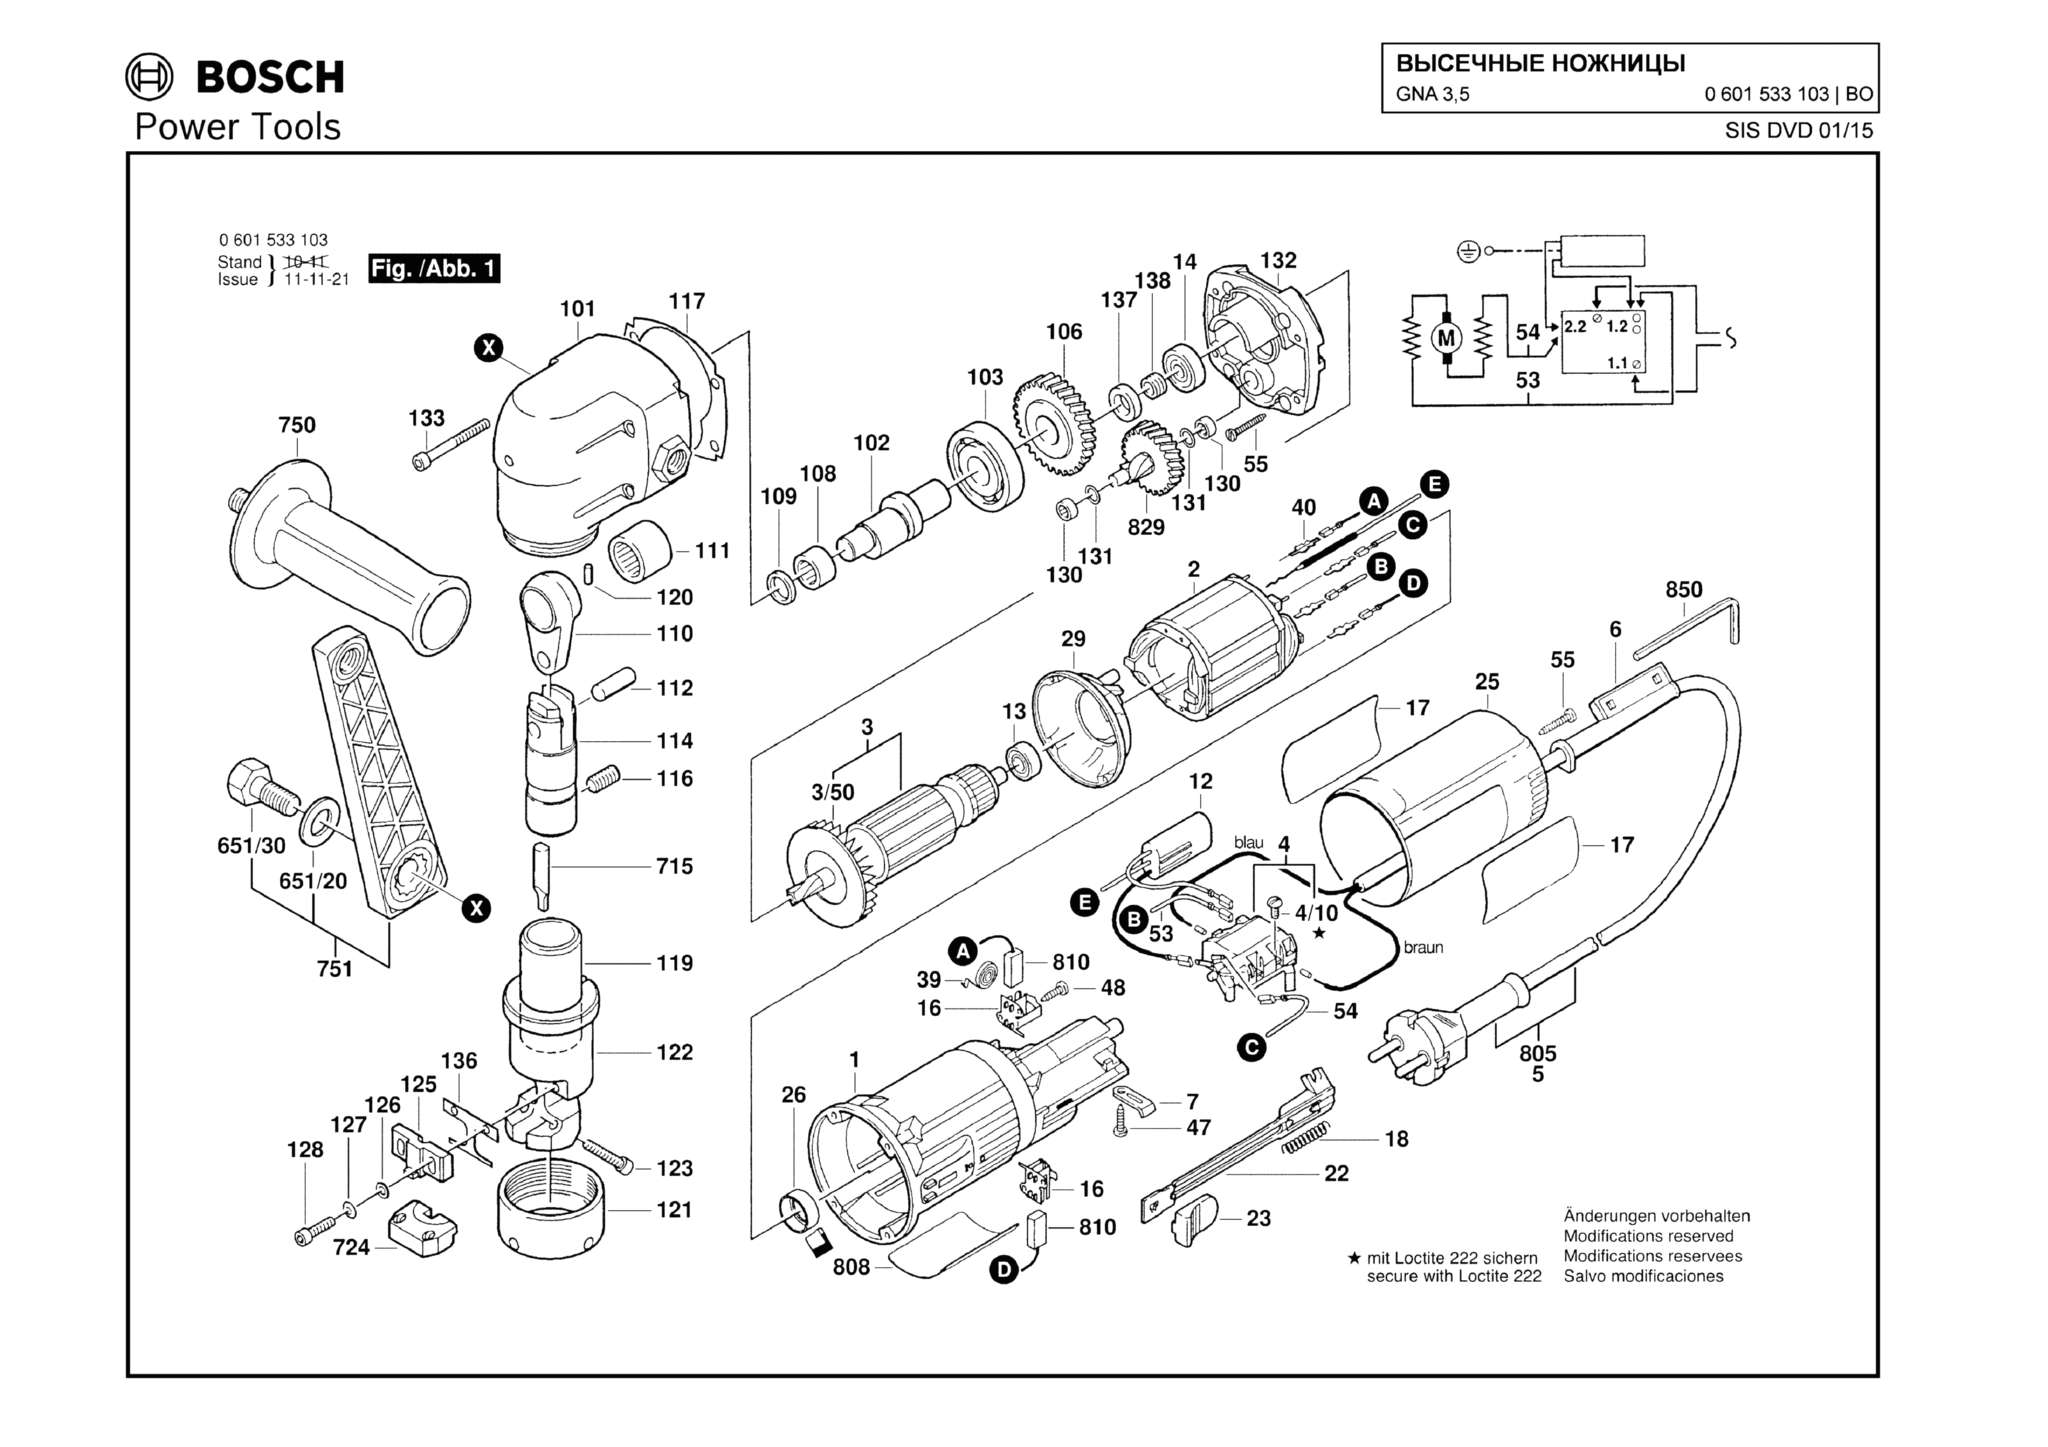 Запчасти, схема и деталировка Bosch GNA 3,5 (ТИП 0601533103)